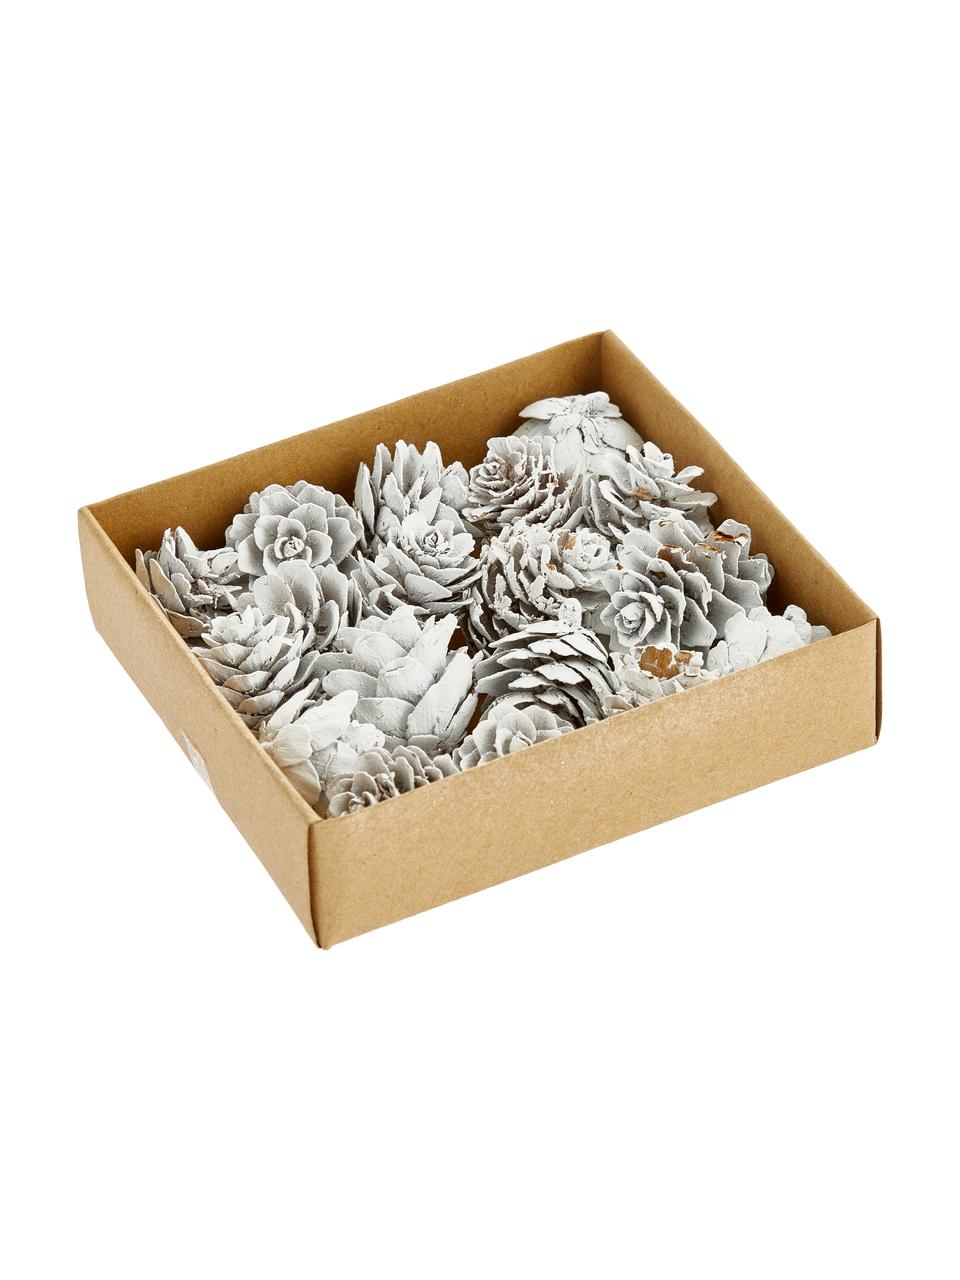 Deko-Zapfen-Set Pinecones, 18 Stück, Kieferzapfen, beschichtet, Weiß, Ø 6 x H 6 cm